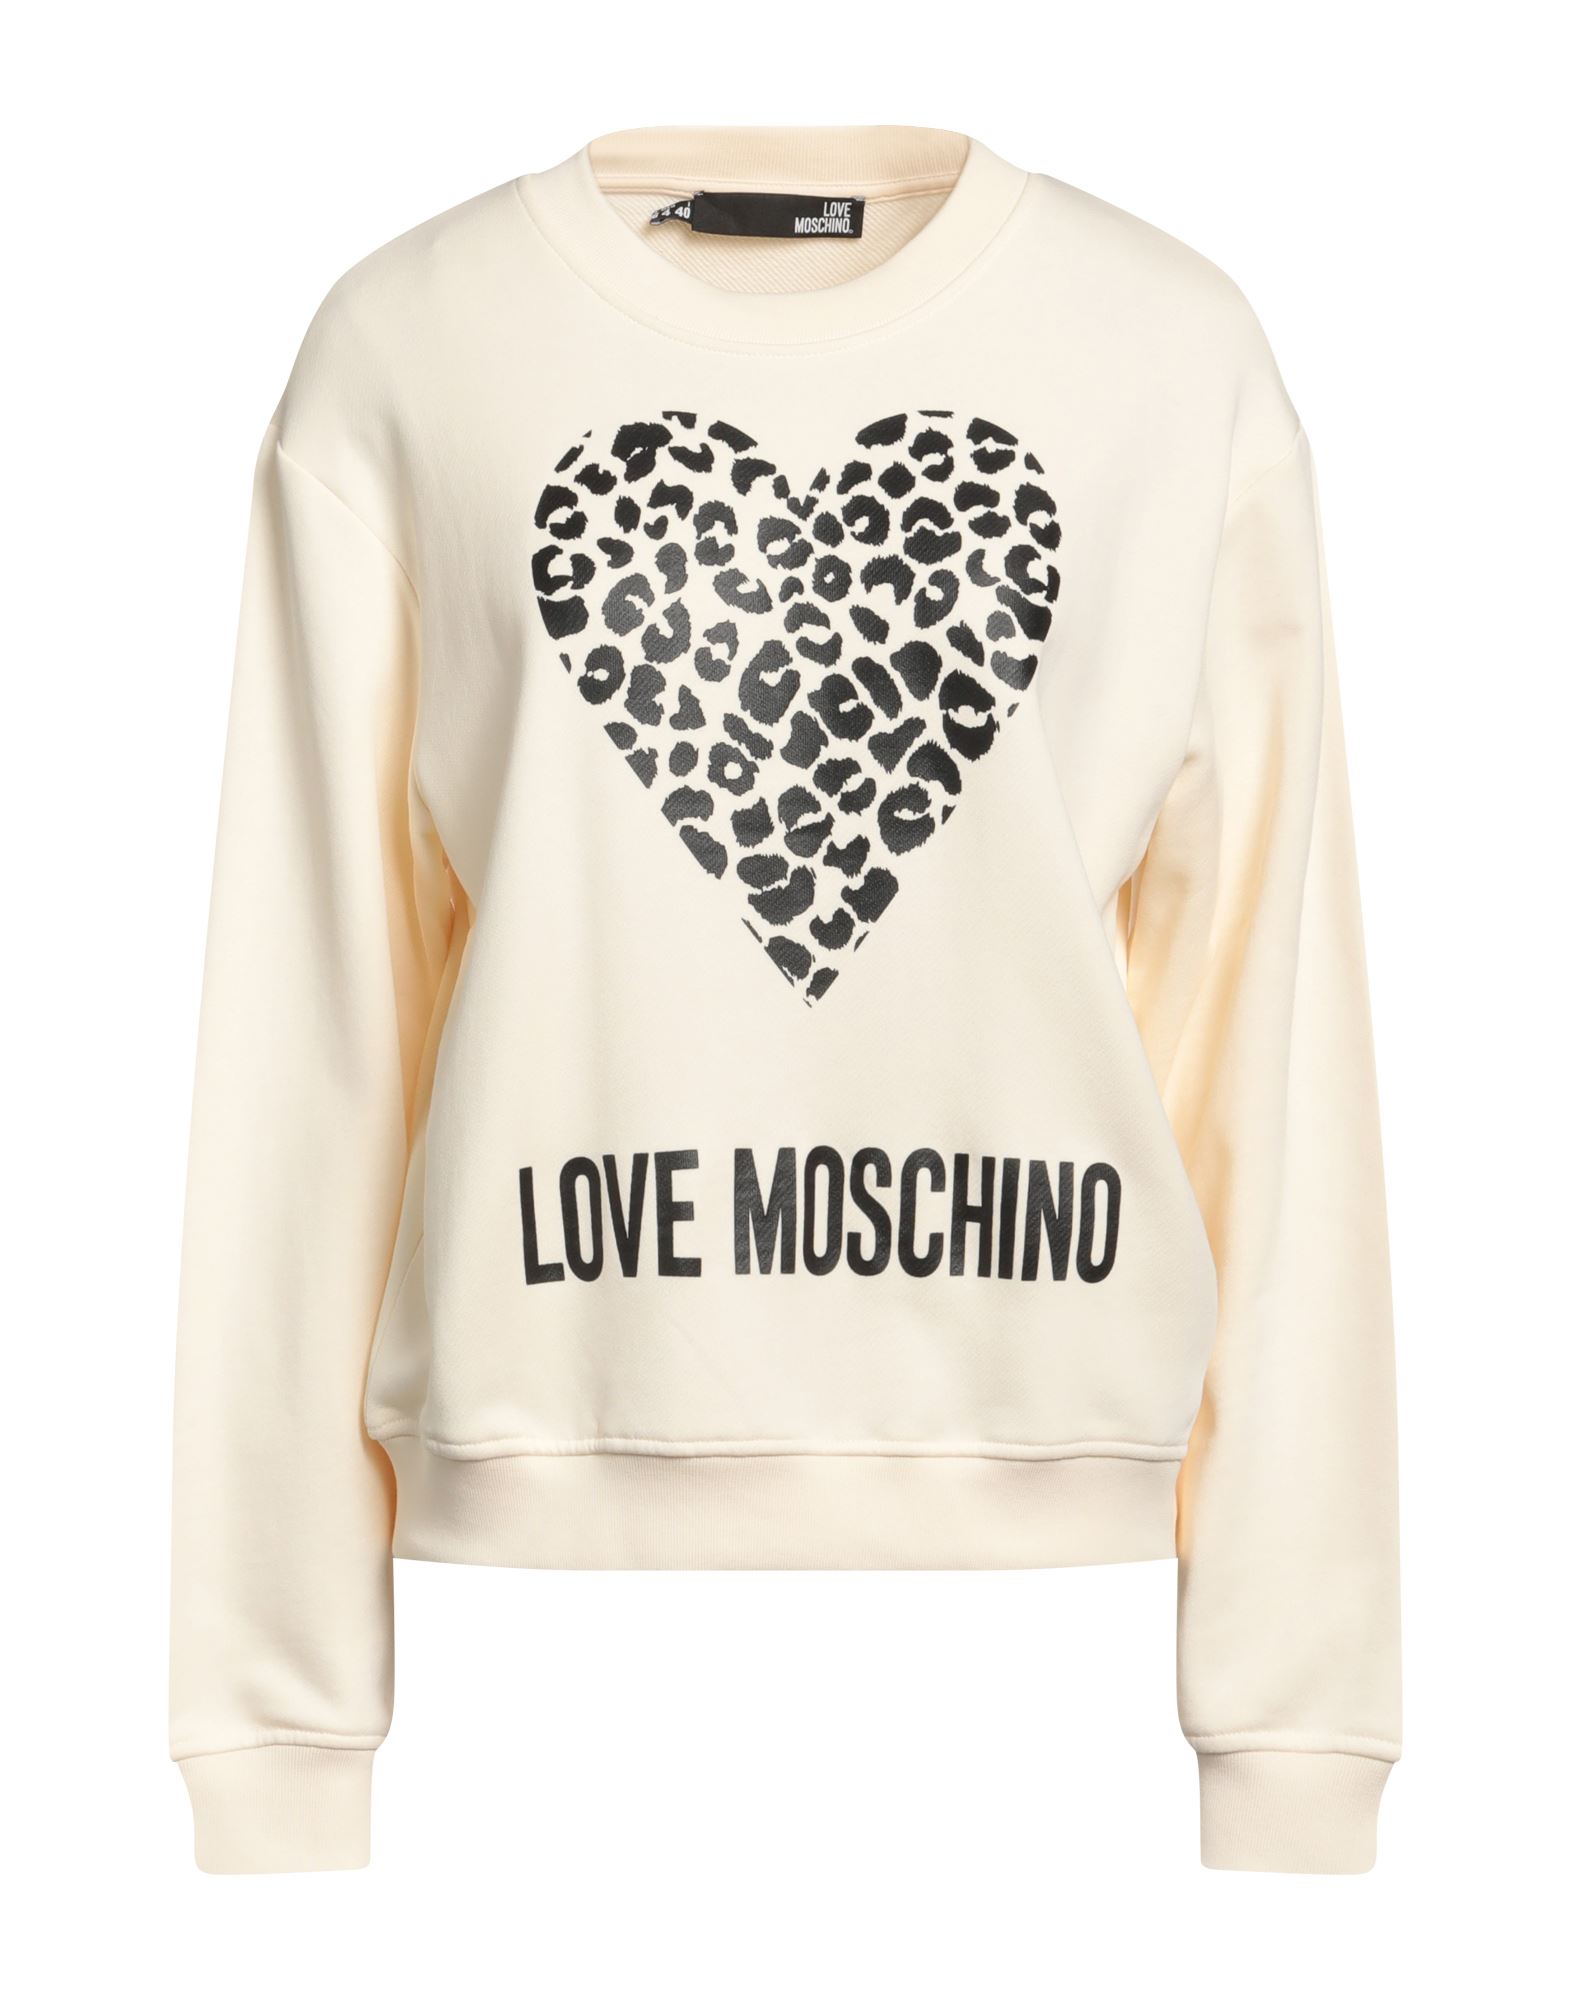 LOVE MOSCHINO Sweatshirt Damen Cremeweiß von LOVE MOSCHINO